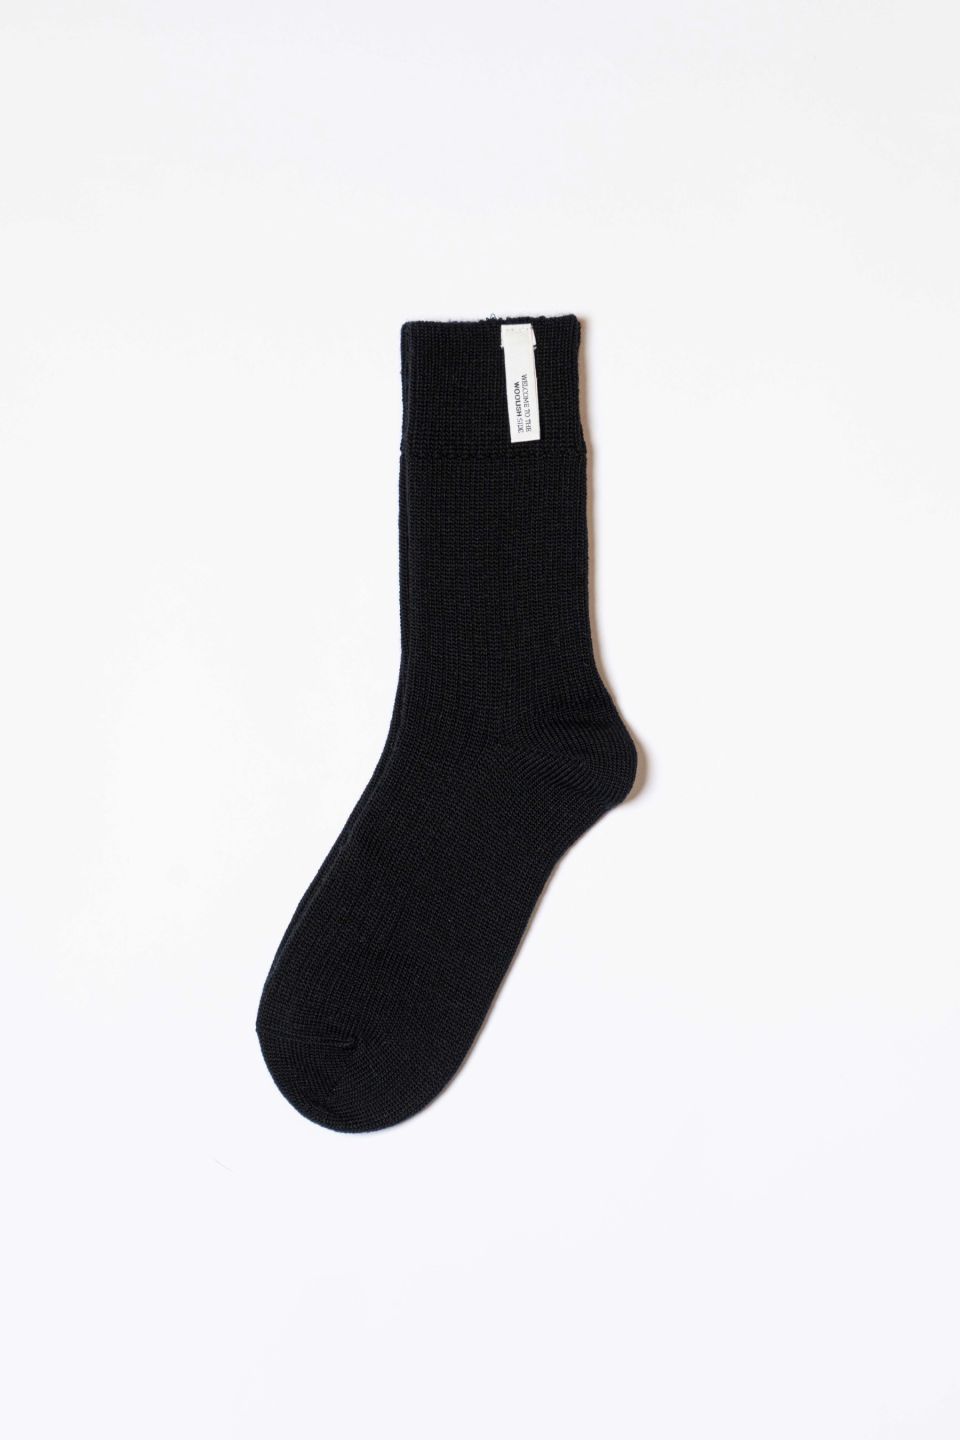 Merino socks black